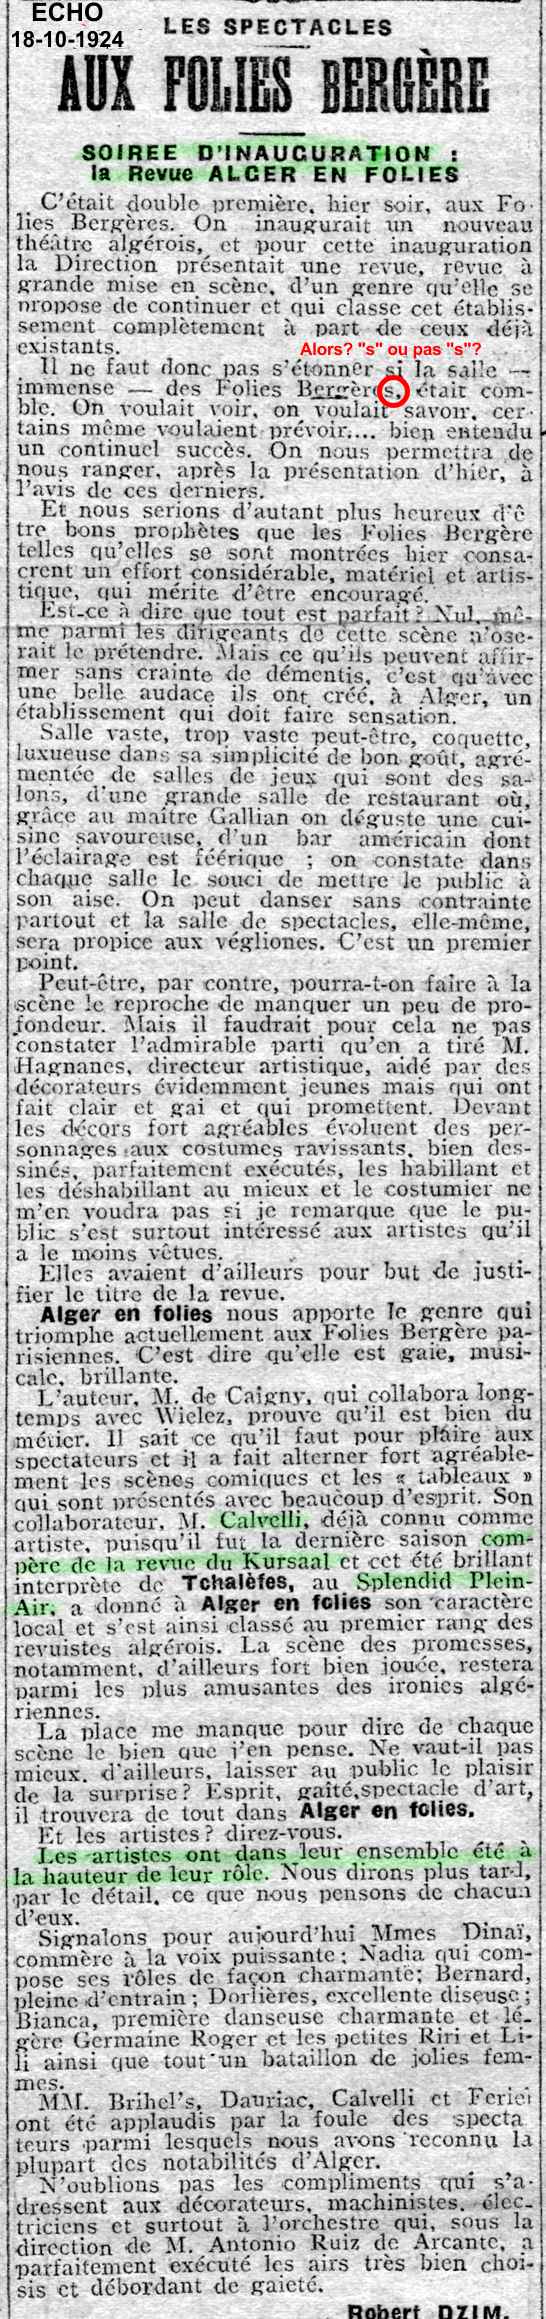 15-10-1924 : Alger en folies au casino des Folies Bergère